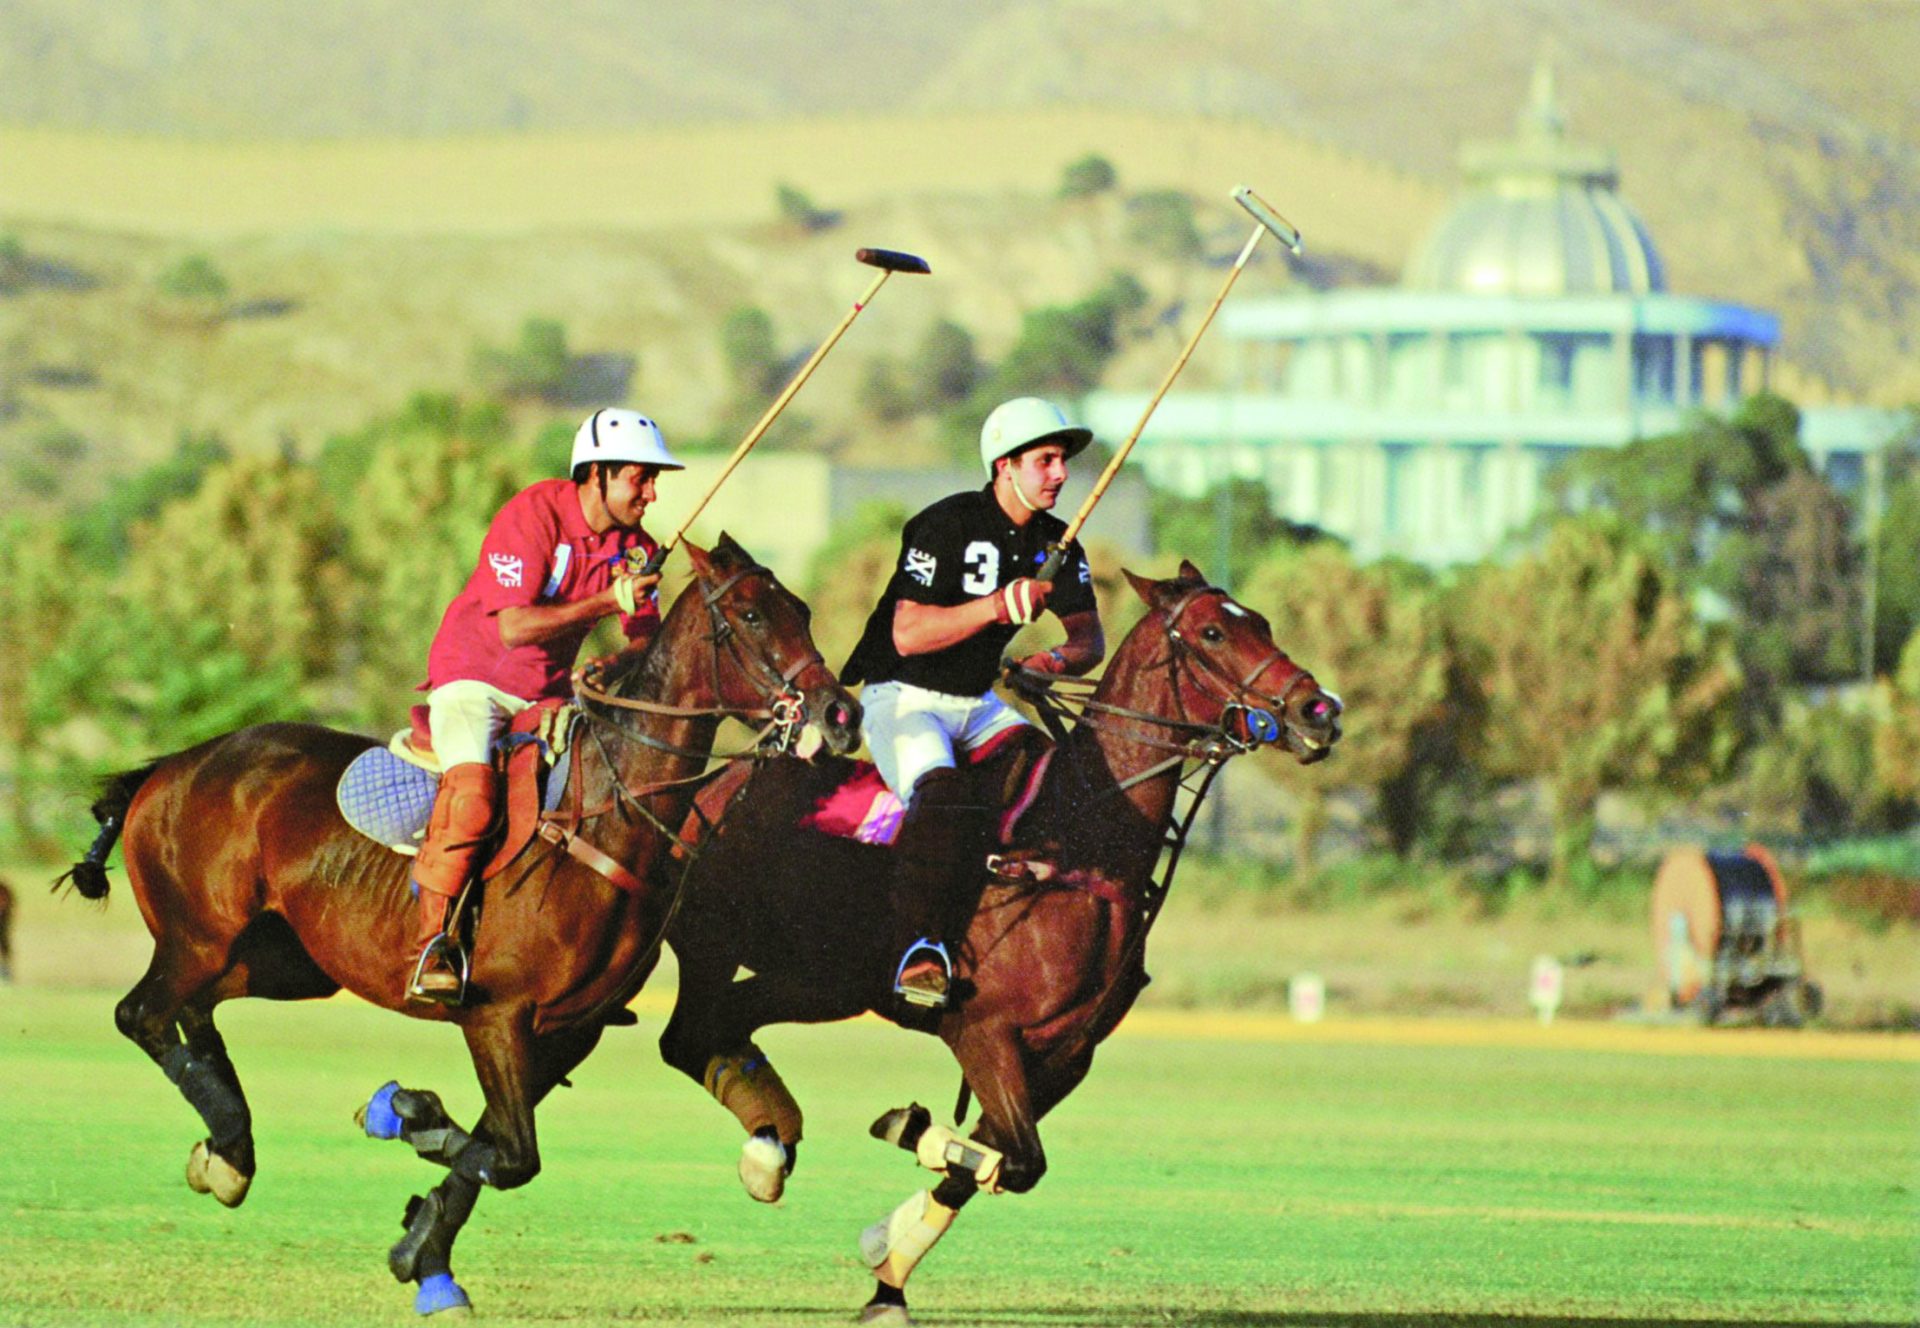 Desporto nacional no Irão. A cavalo num poema muito antigo